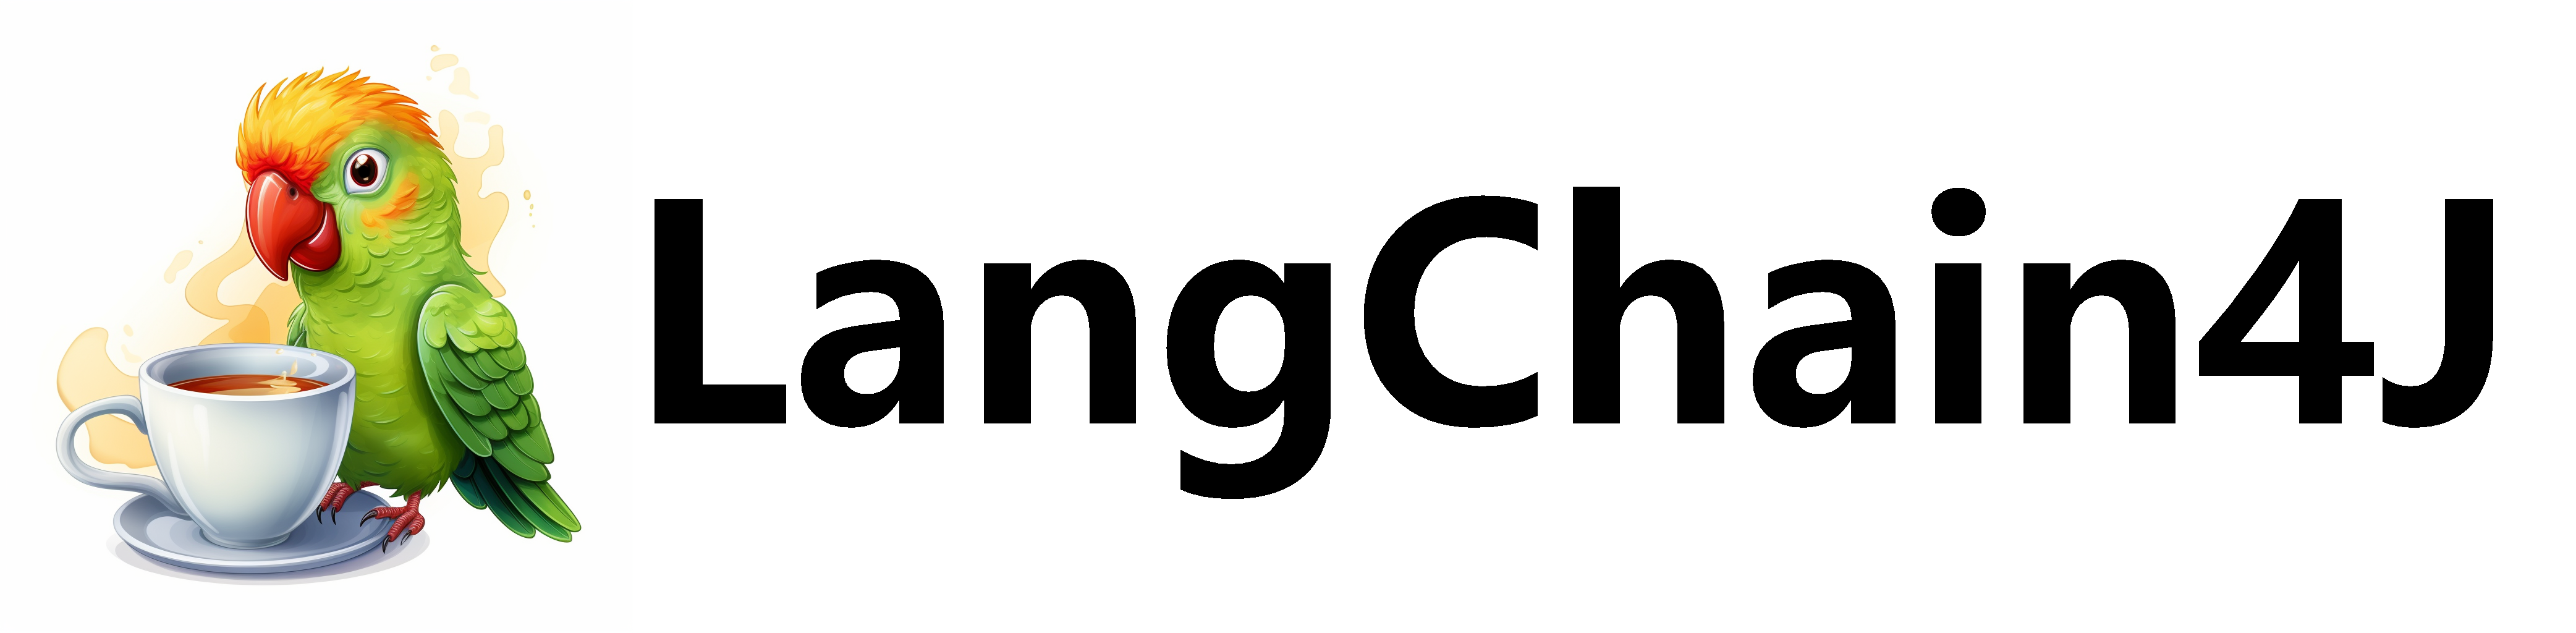 langchain4j_logo_text.png